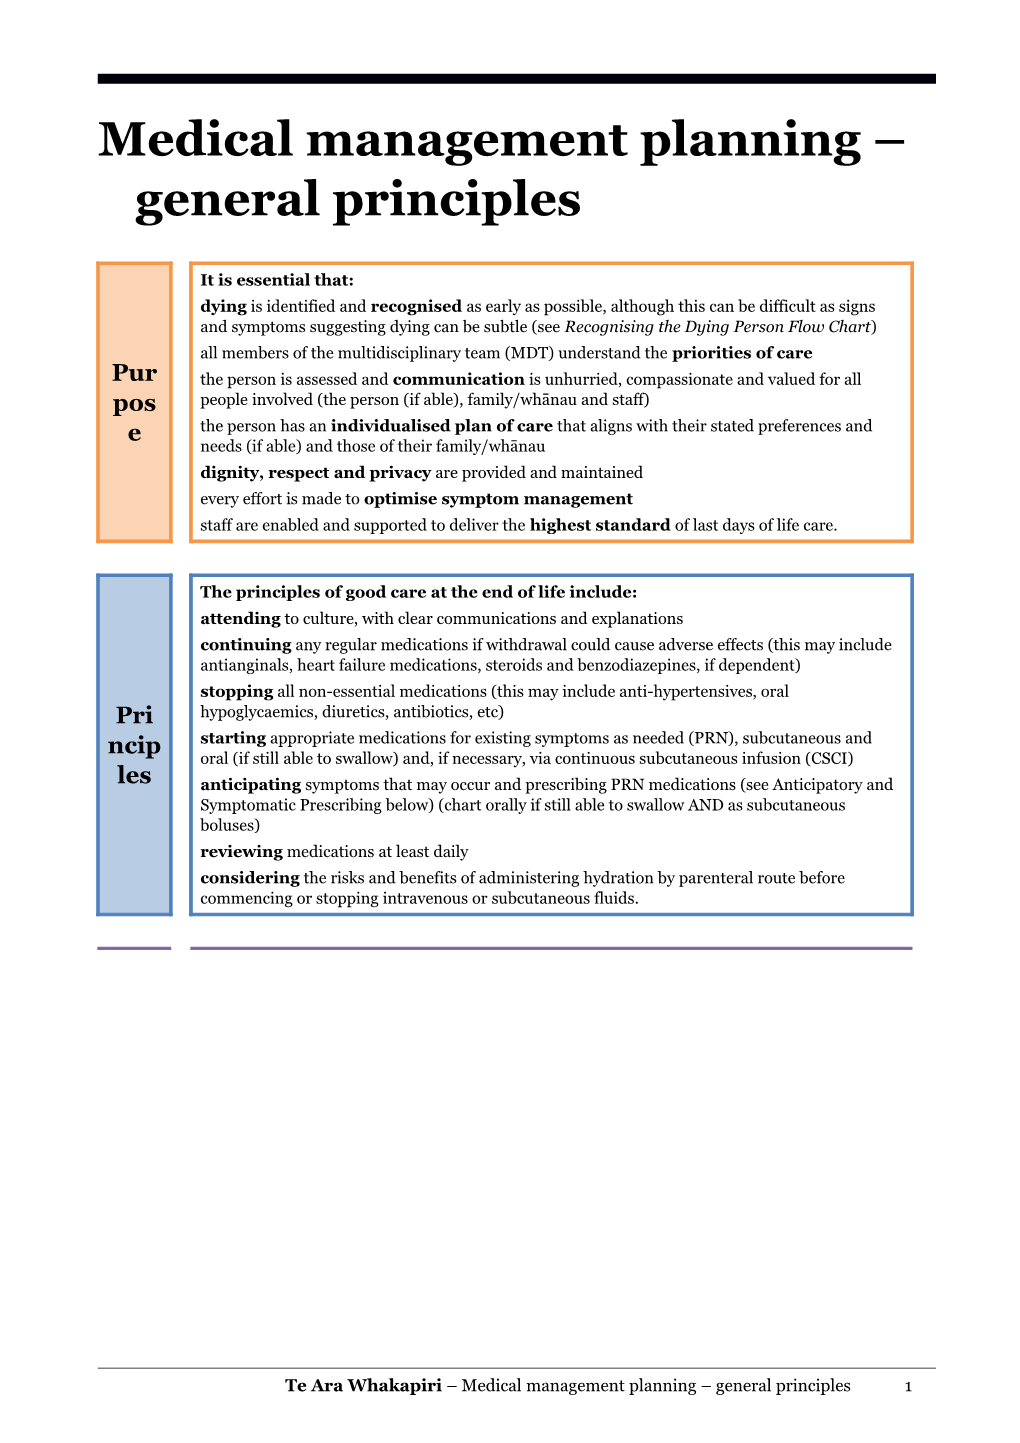 Medical Management Planning General Principles